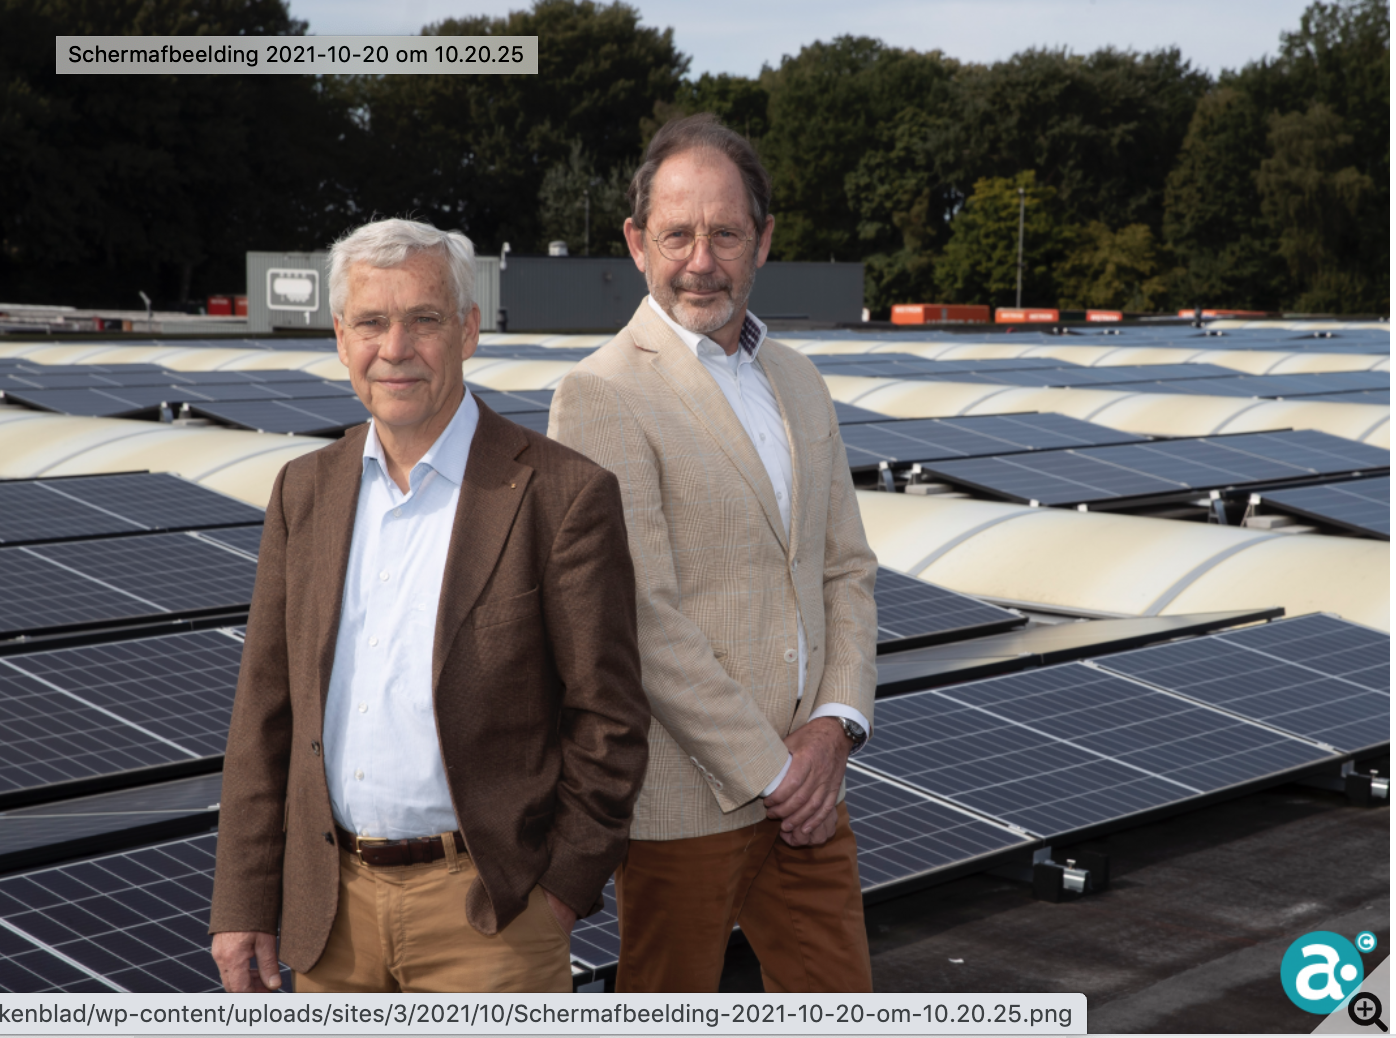 WeertEnergie ontzorgt ondernemers bij plaatsen van zonnepanelen